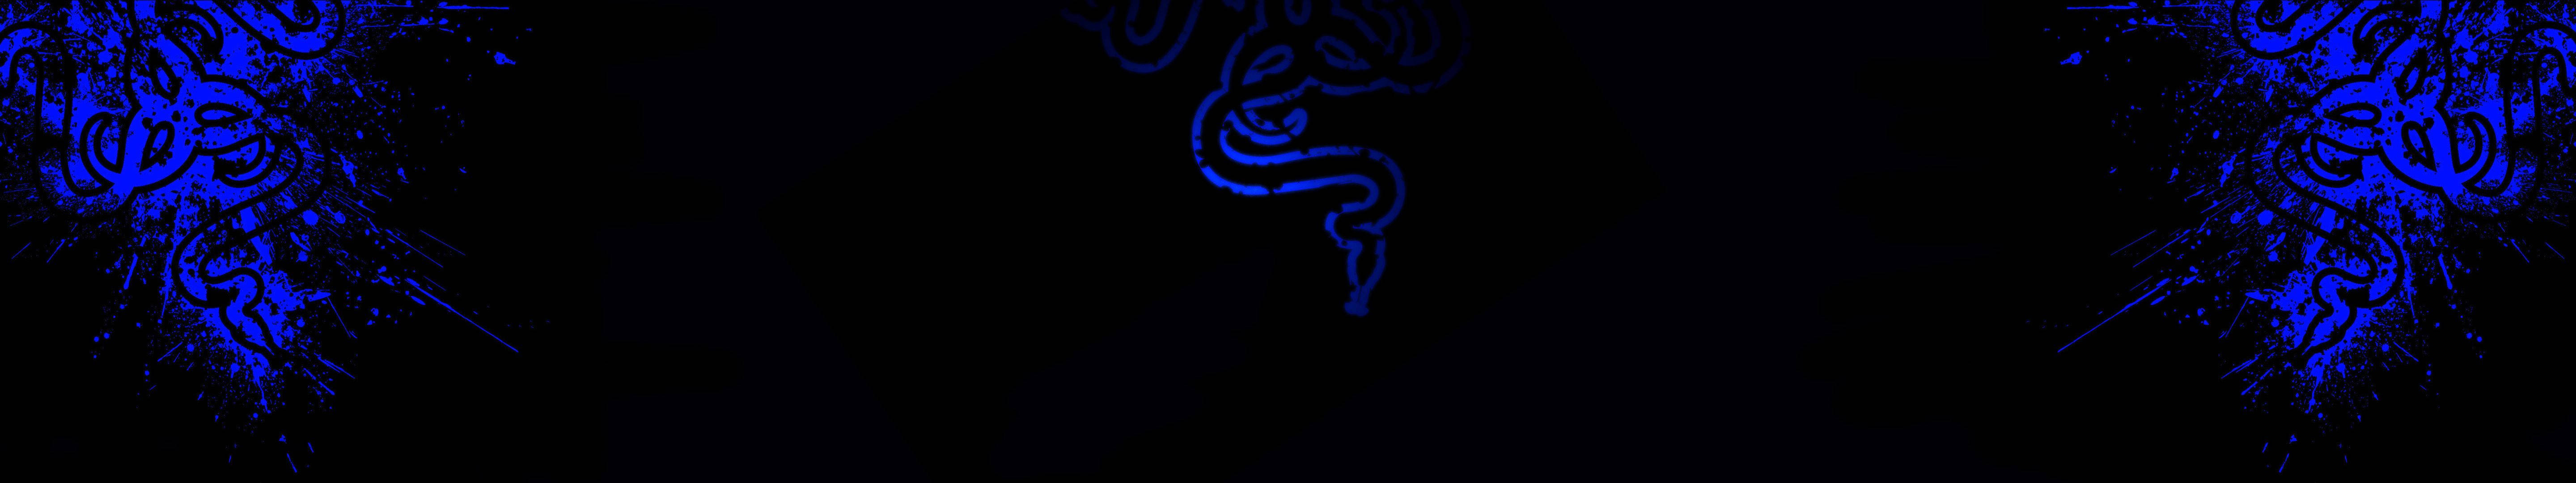 Blaueabstrakte Schlangen Auf Drei Bildschirmen Wallpaper